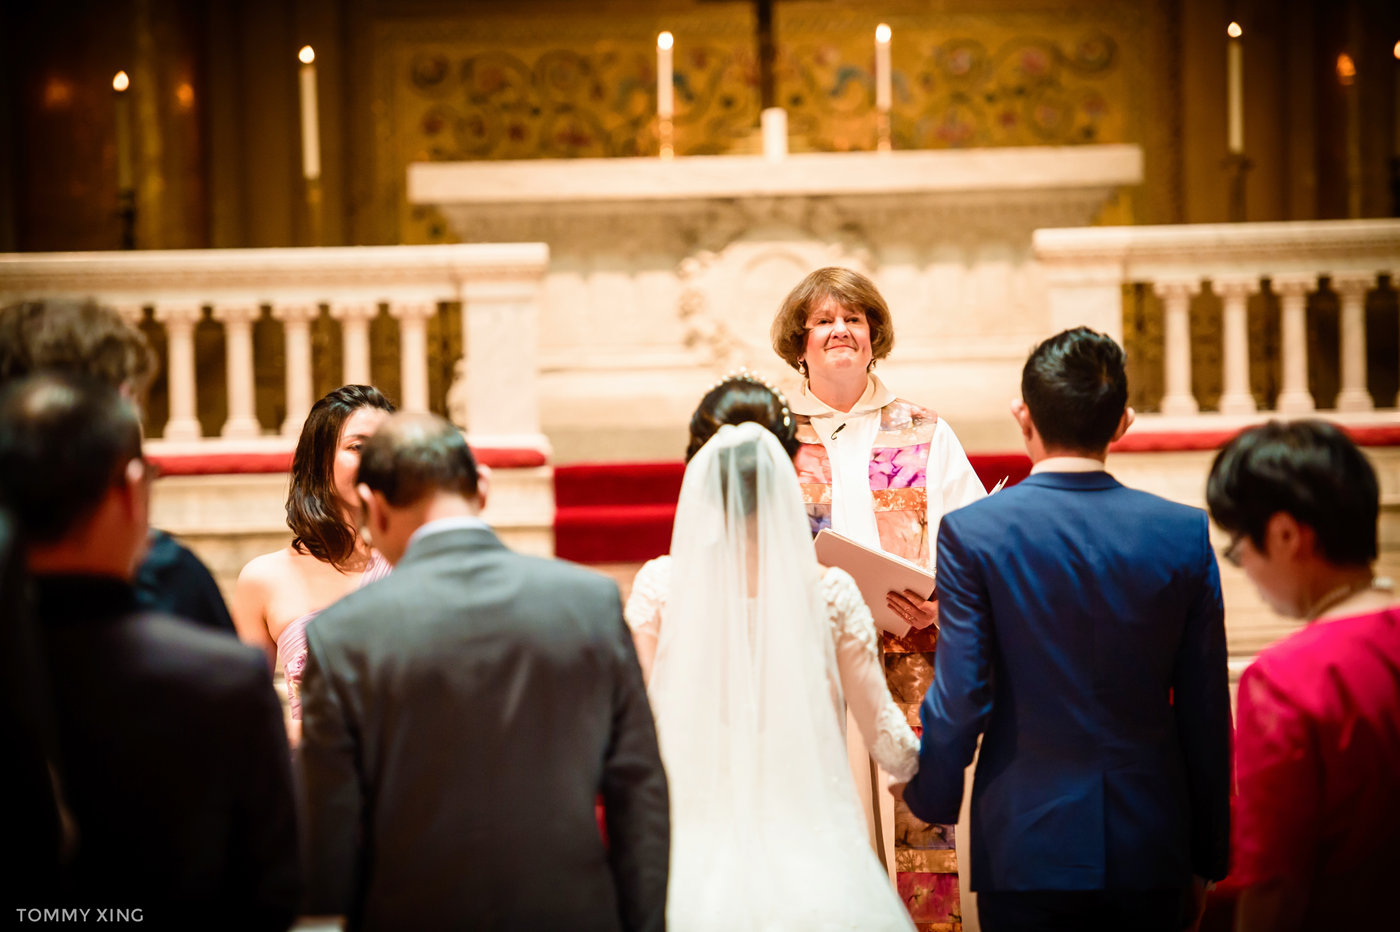 stanford memorial church wedding 旧金山湾区斯坦福教堂婚礼 Tommy Xing Photography 055.jpg